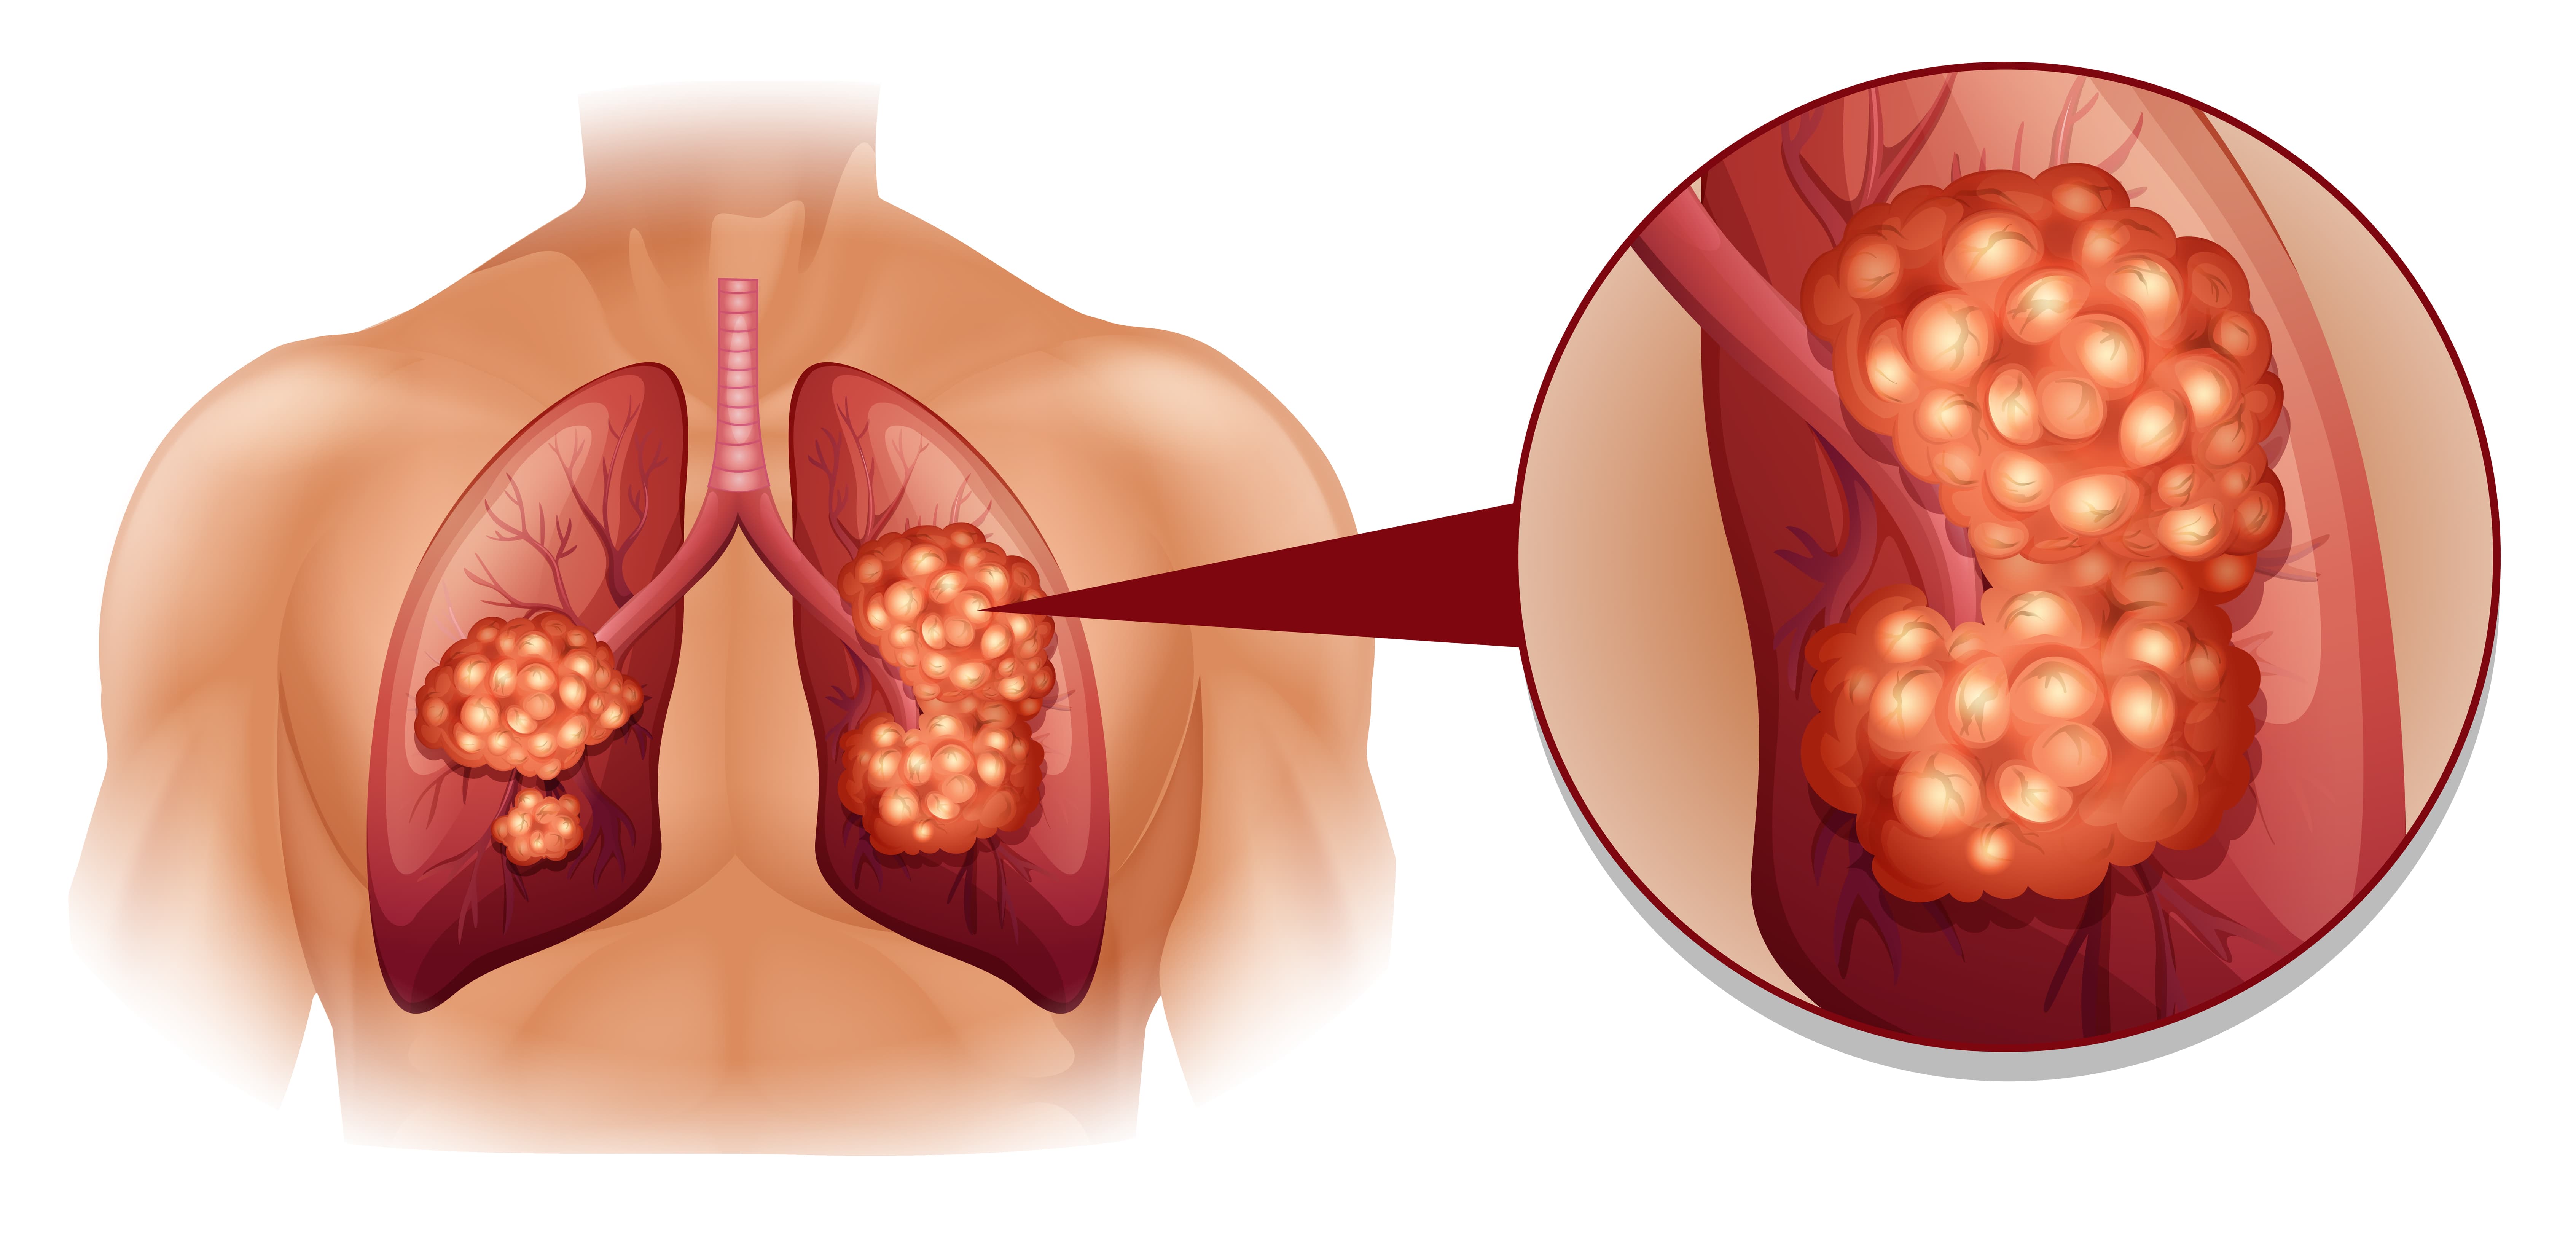 Rak płuc to jeden z najczęstszych i najgorzej rokujących nowotworów złośliwych